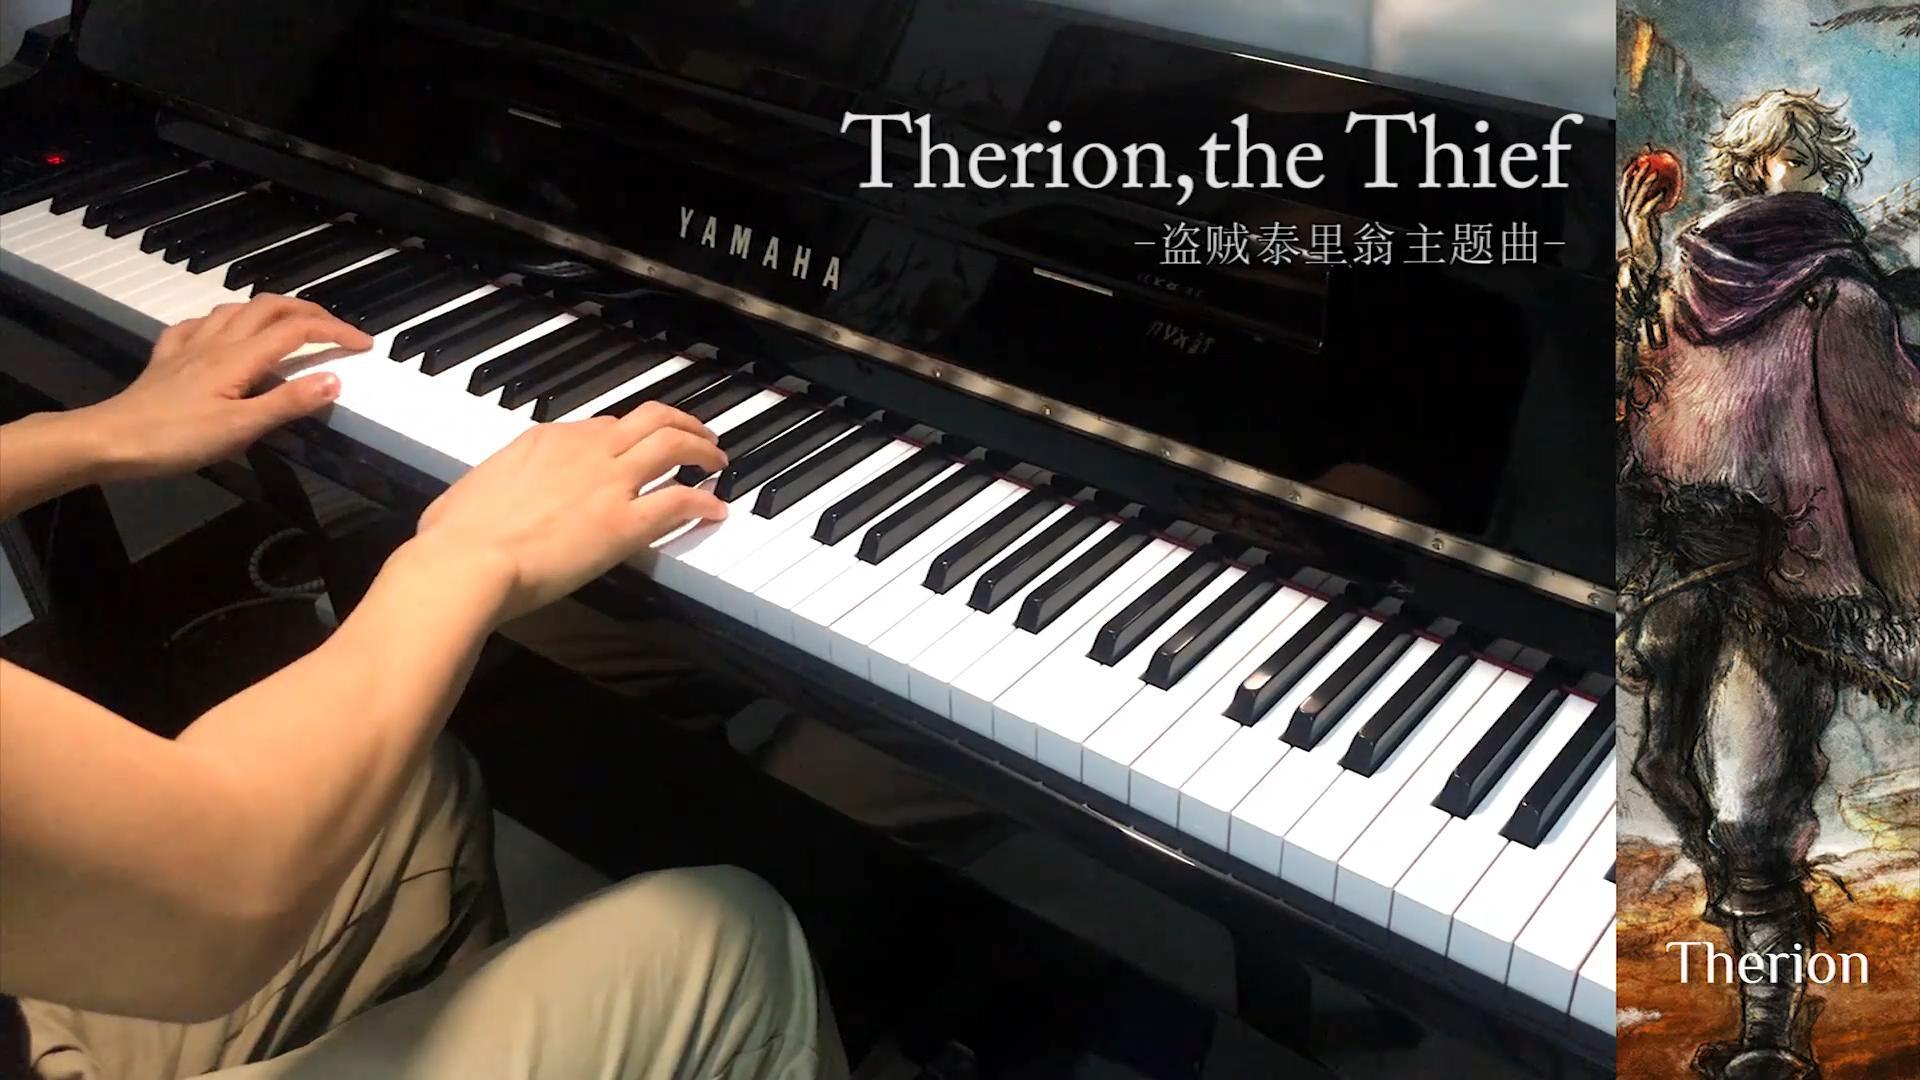 琥珀琴师Louis - 《八方旅人》Therion,the Thief 盗贼泰里翁 钢琴版